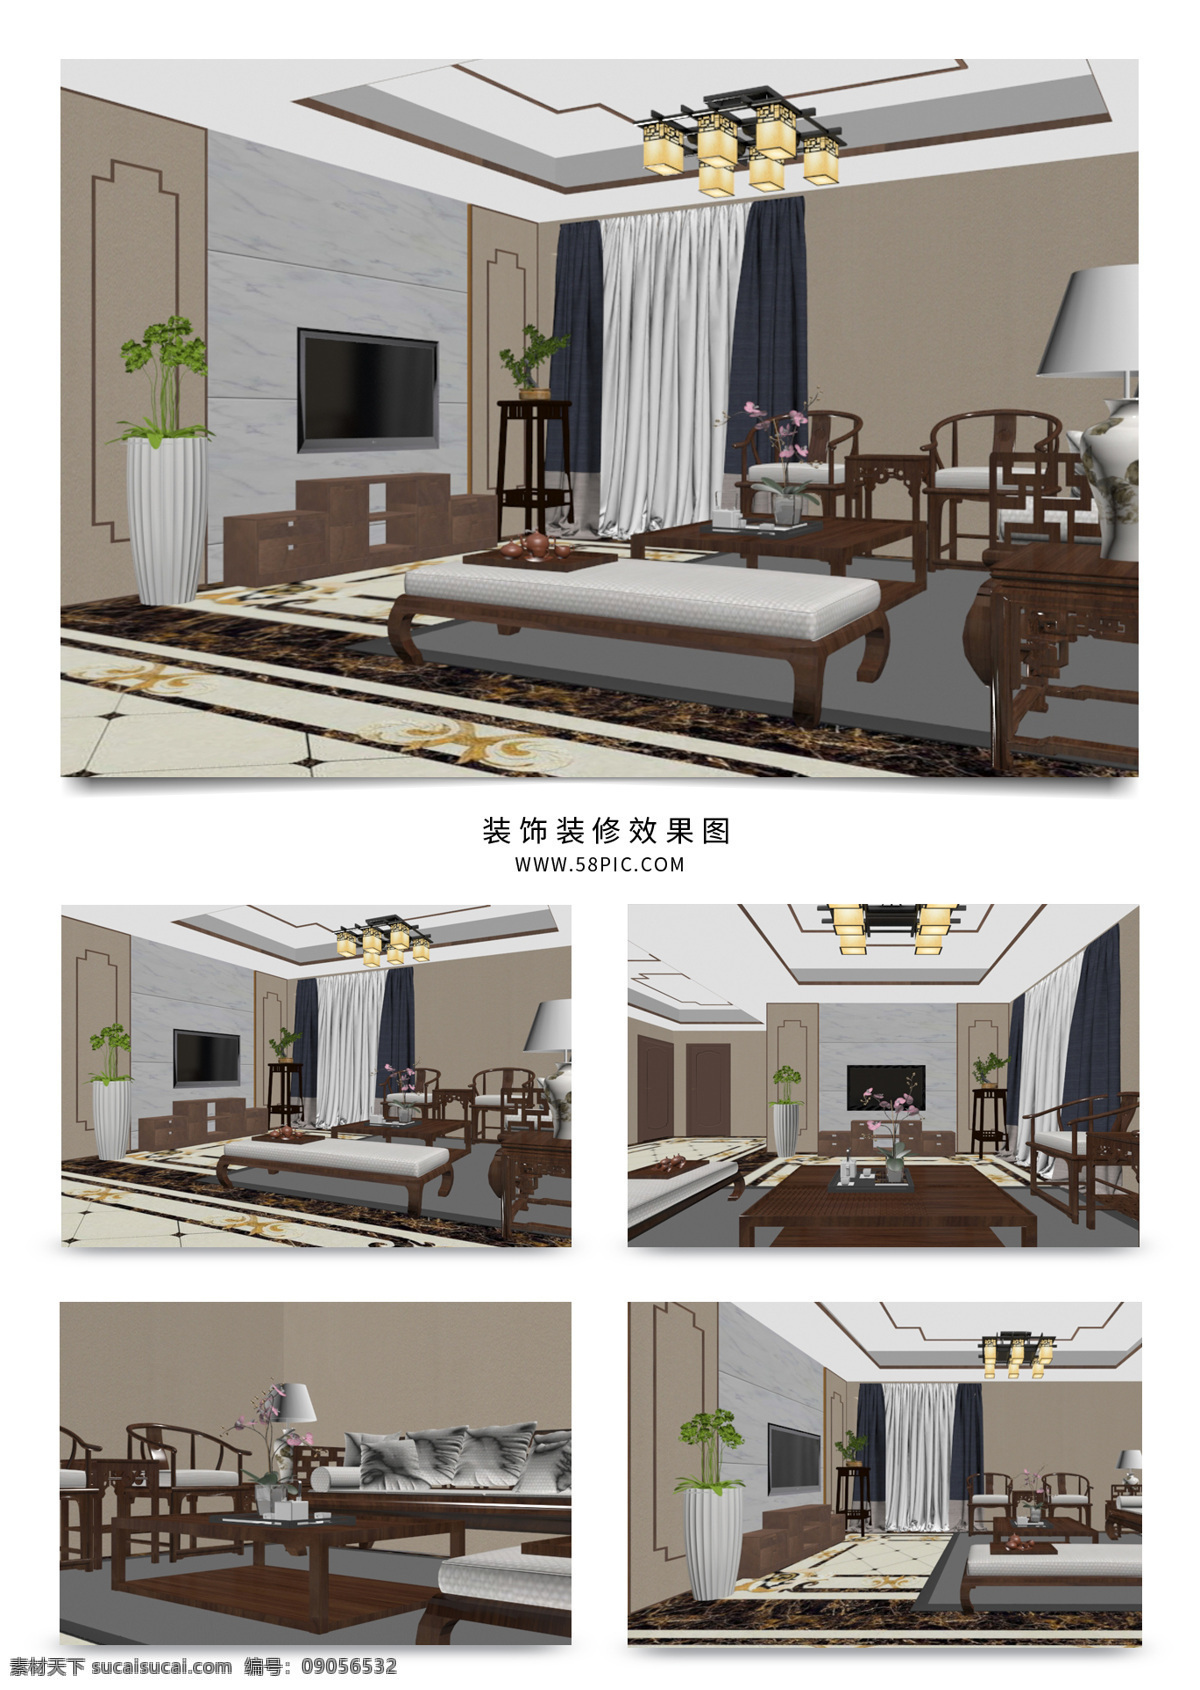 现代 新 中式 风格 家装 客厅 效果图 吊灯 沙发茶几 电视柜 新中式风格